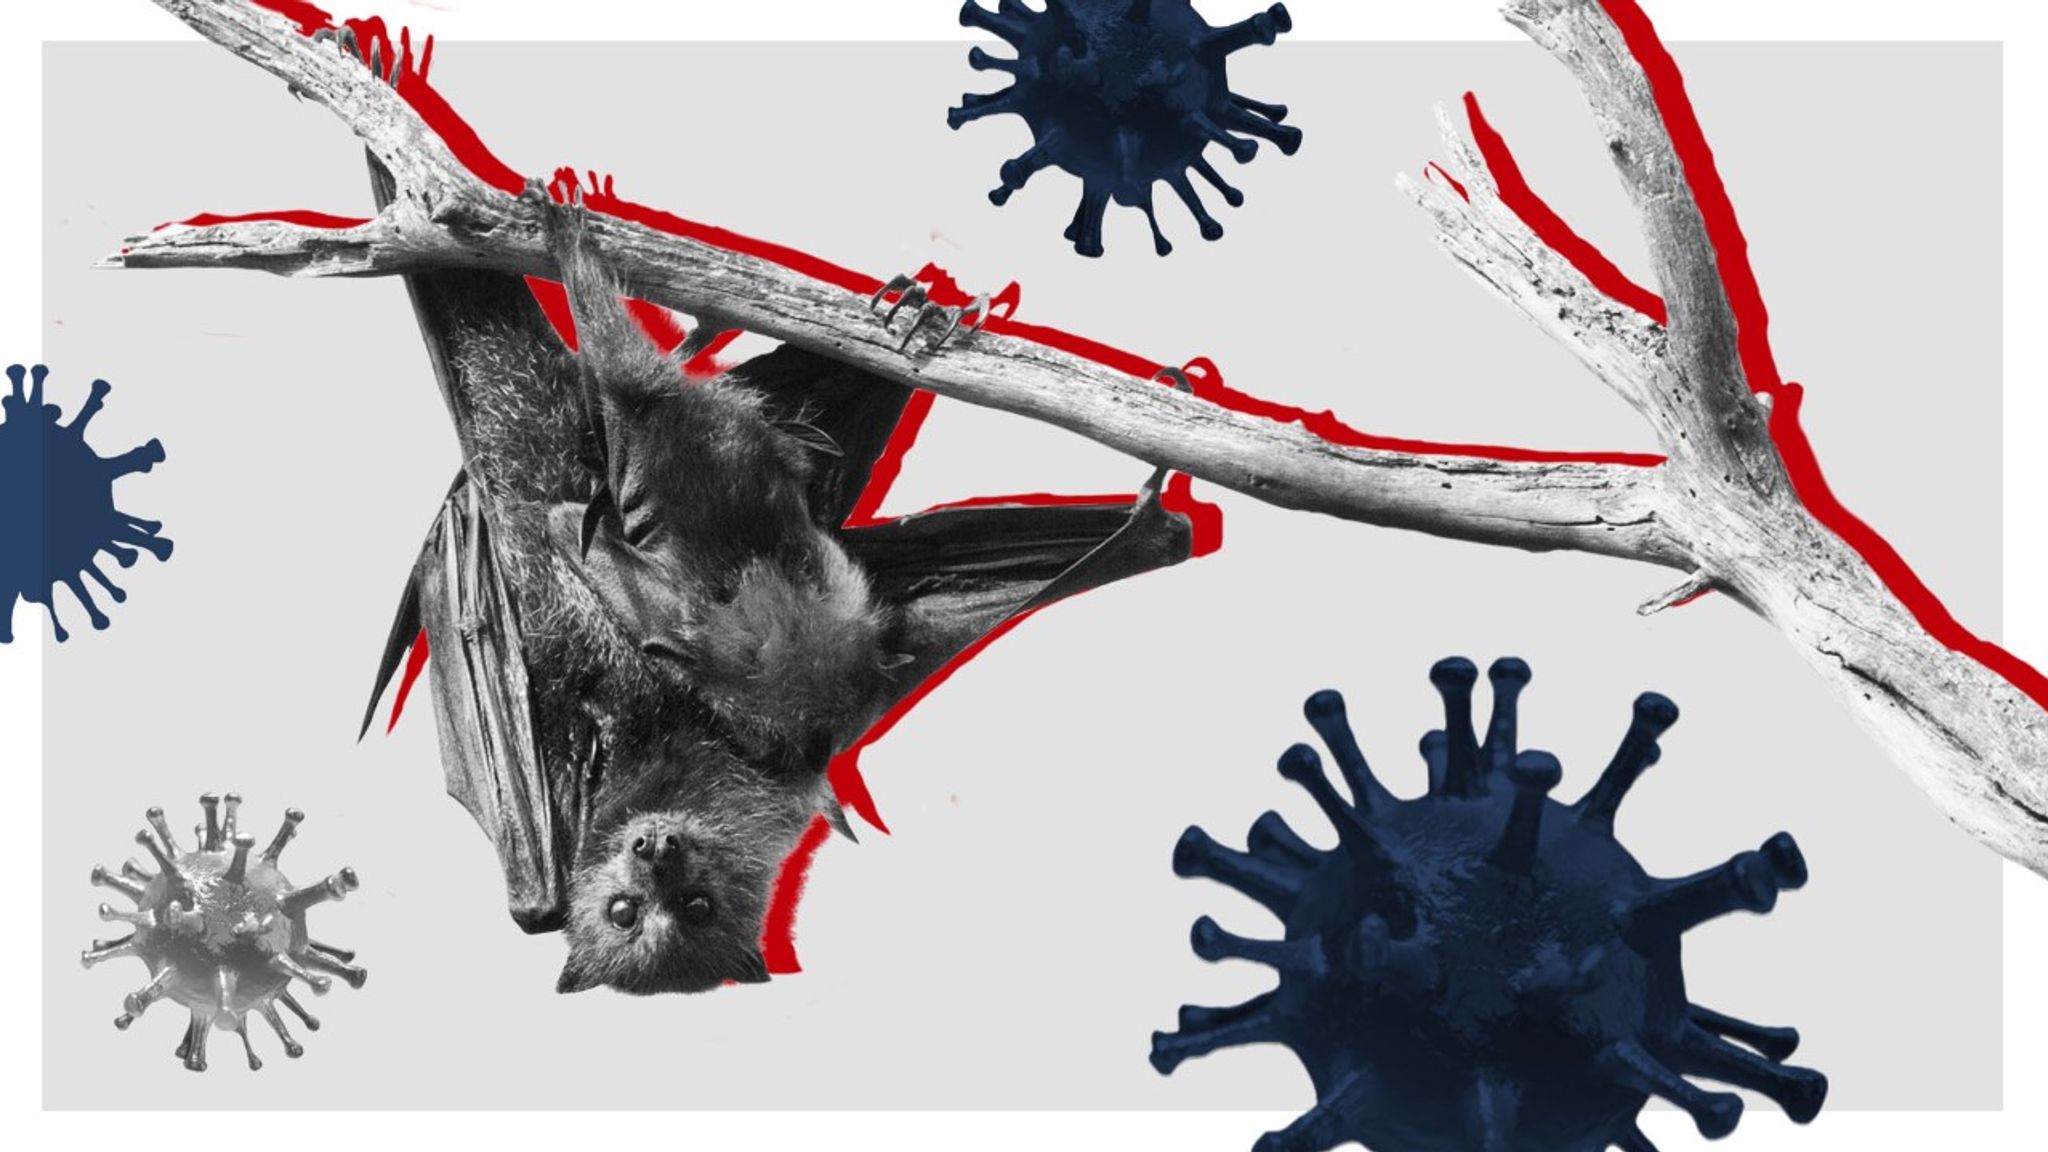  ΠΟΥ: Τα στοιχεία δείχνουν ότι ο ιός προήλθε από νυχτερίδες και όχι εργαστήριο